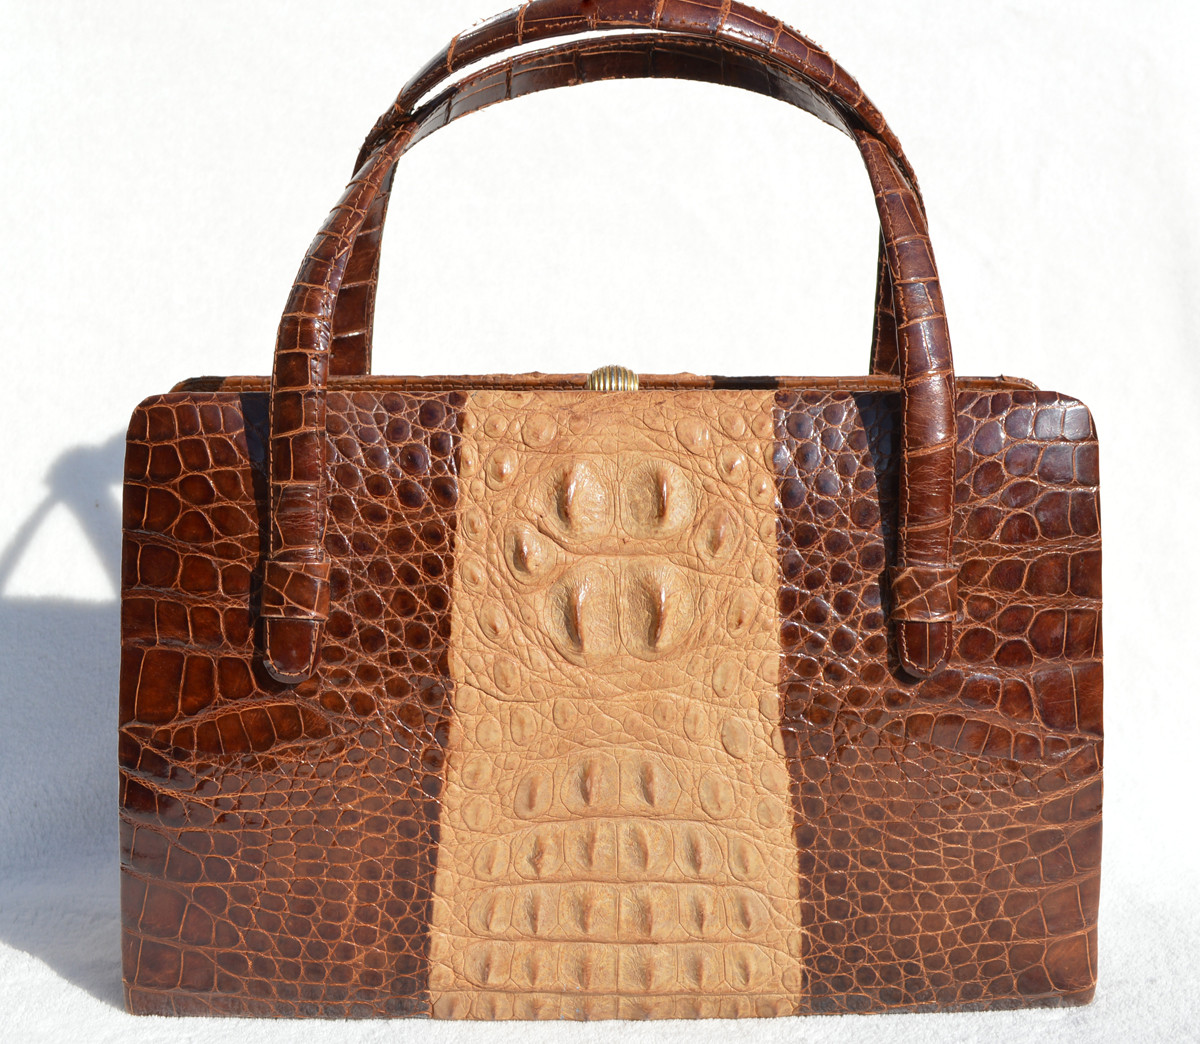 original crocodile skin bags